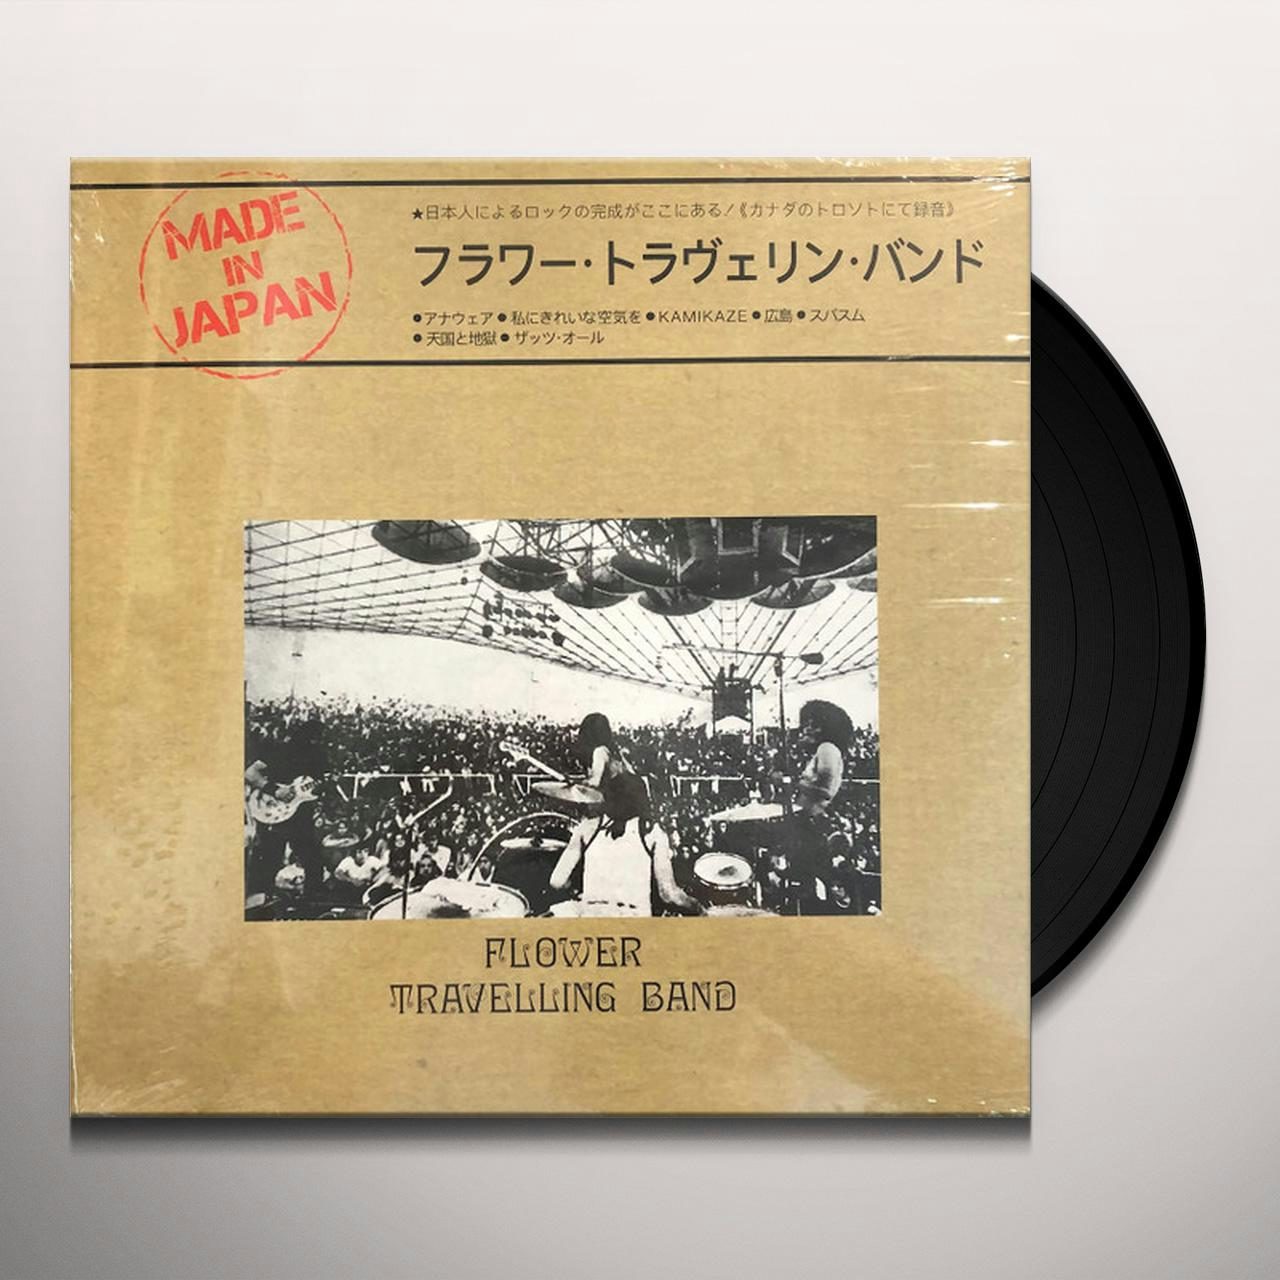 激レア盤  フラワー・トラベリン・バンド  【SATORI】    LPレコード